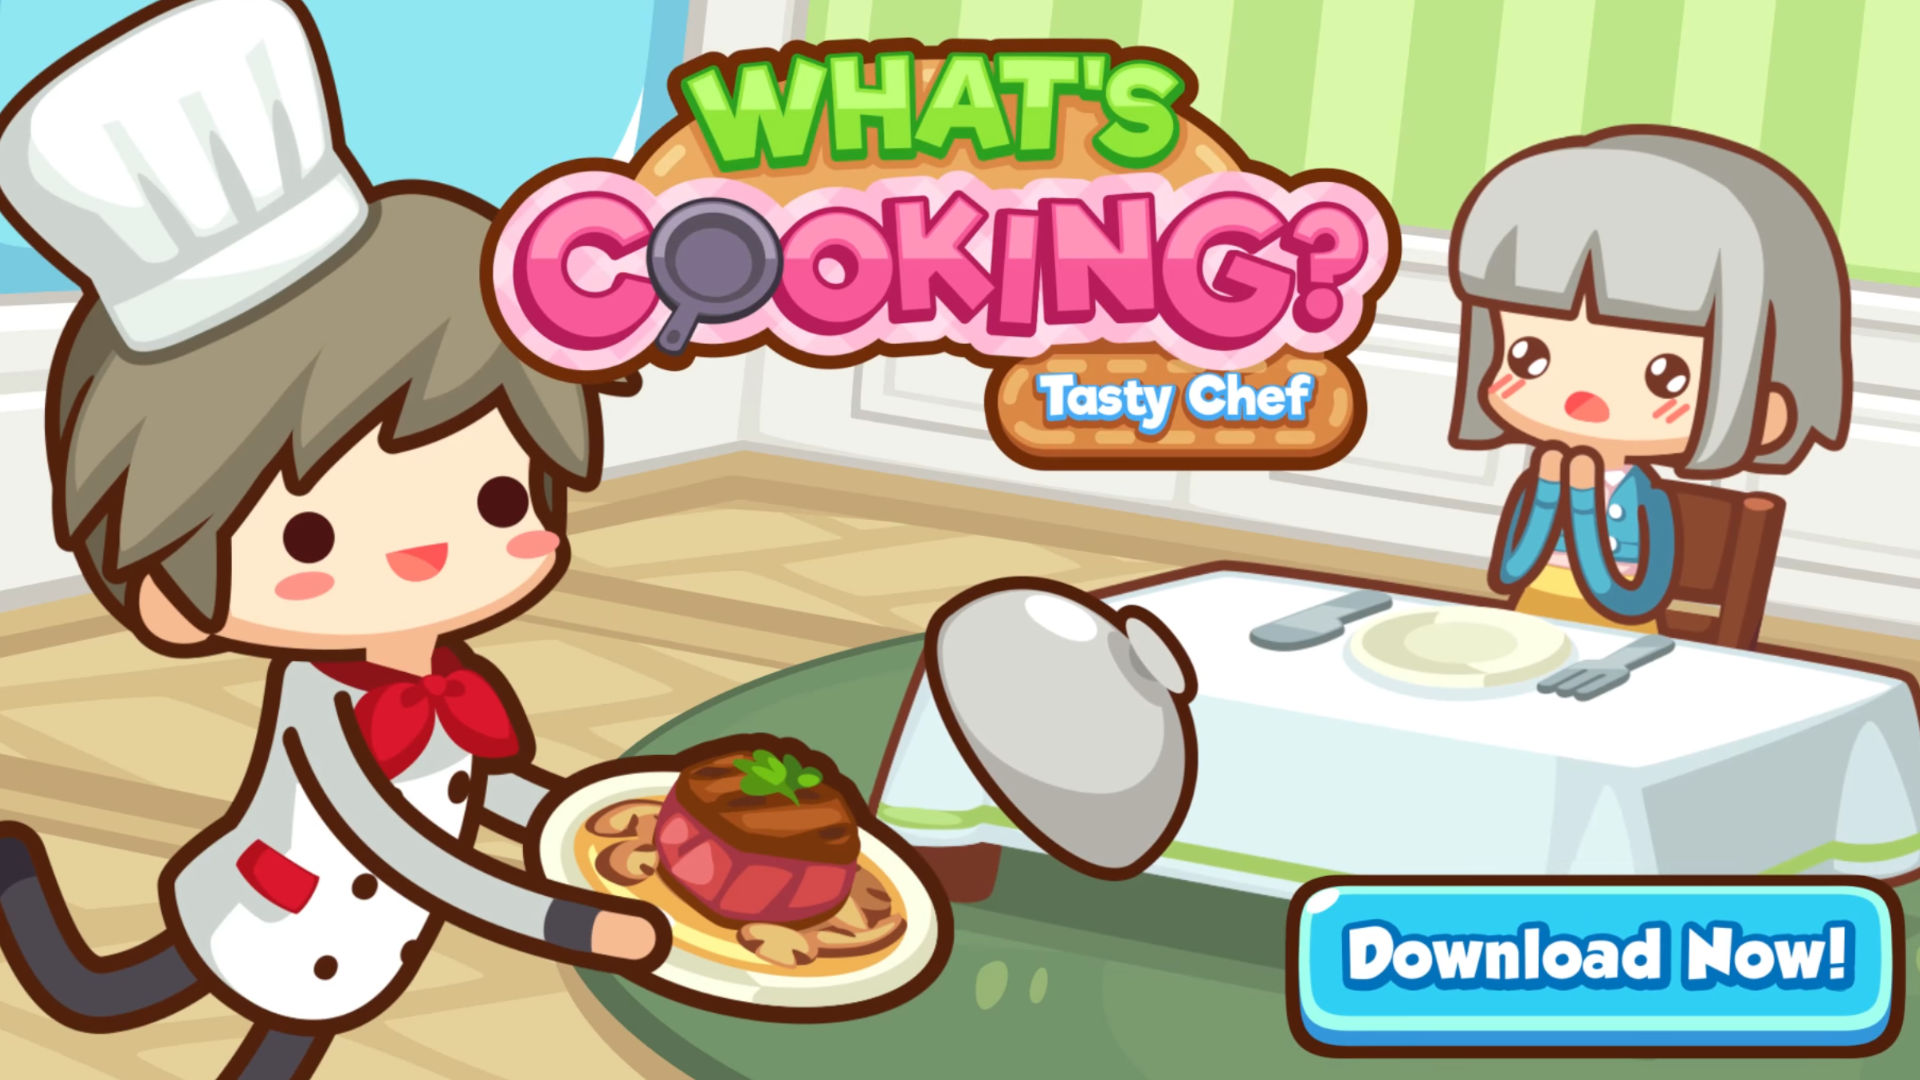 Matlagningsspel;  Vad är Cooking kocken spiller mat över ett bord